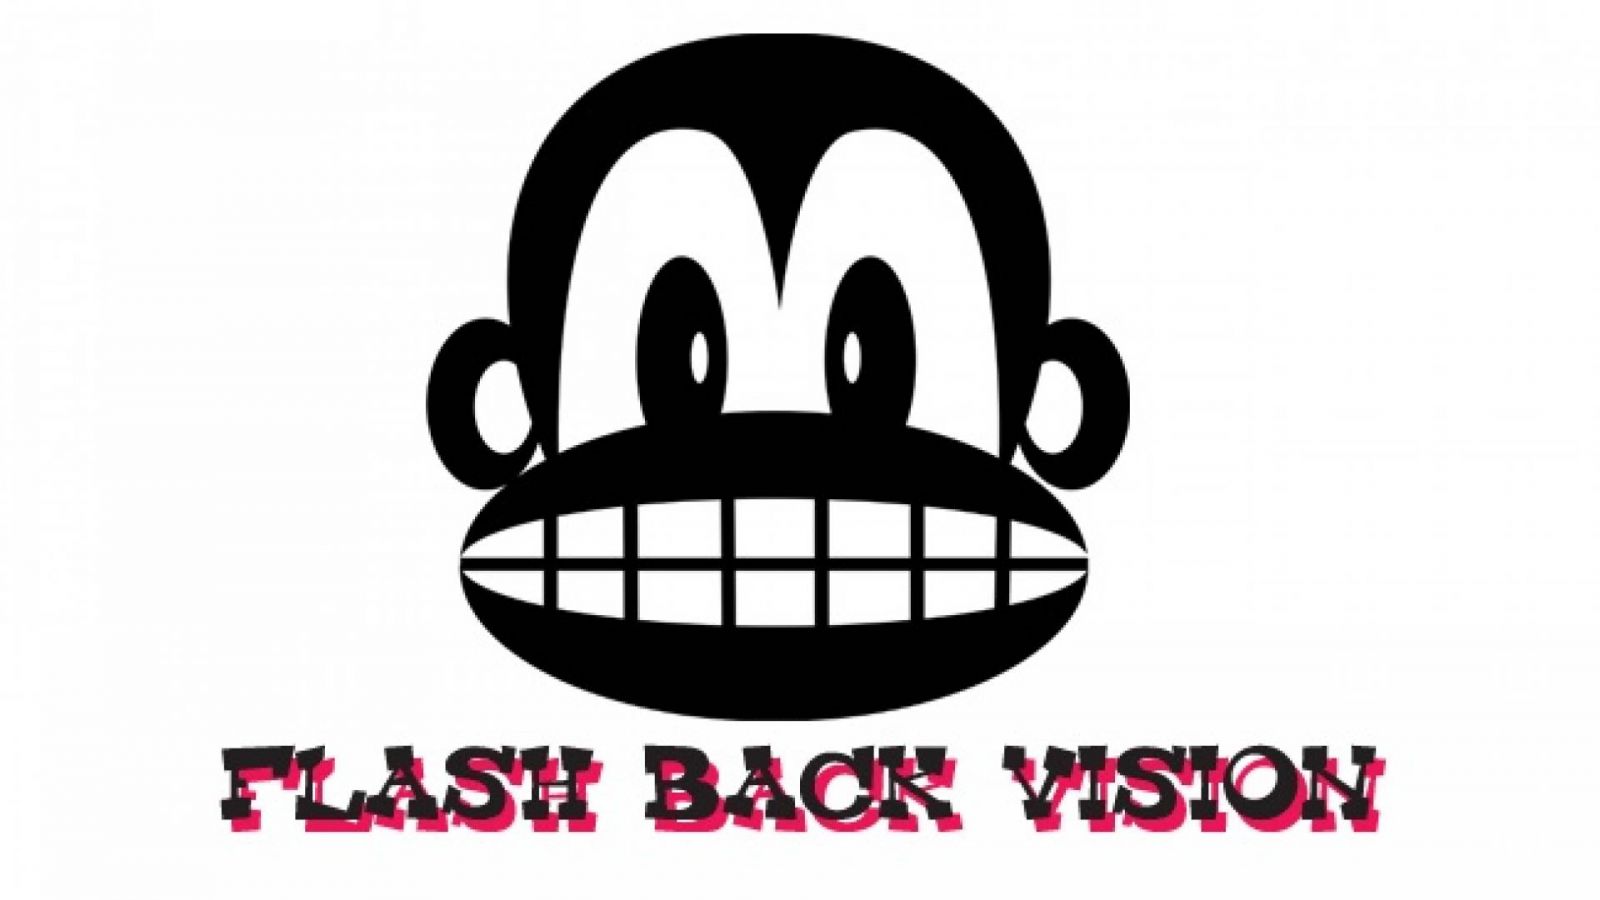 Flash Back Vision © Flash Back Vision